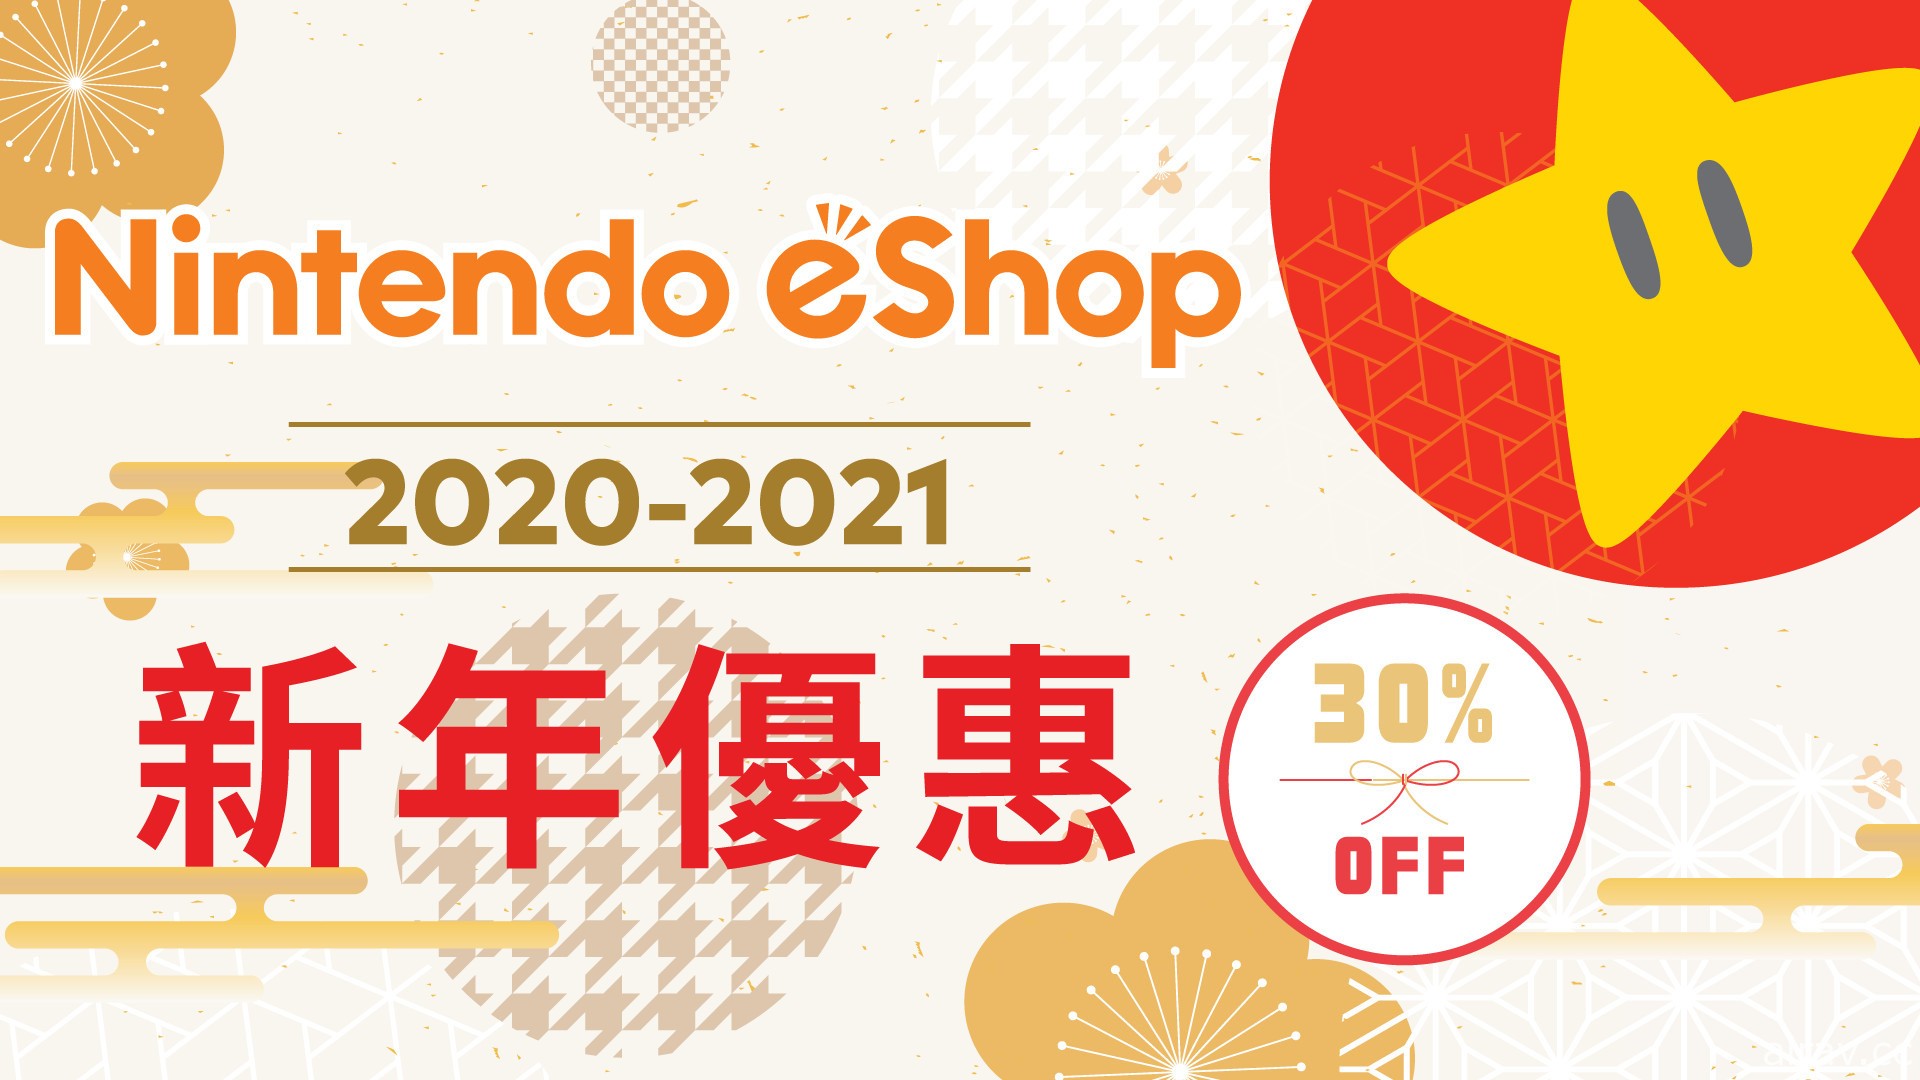 《瑪利歐賽車 8 豪華版》線上大賽「Nintendo HK 2021 Cup」本週六登場